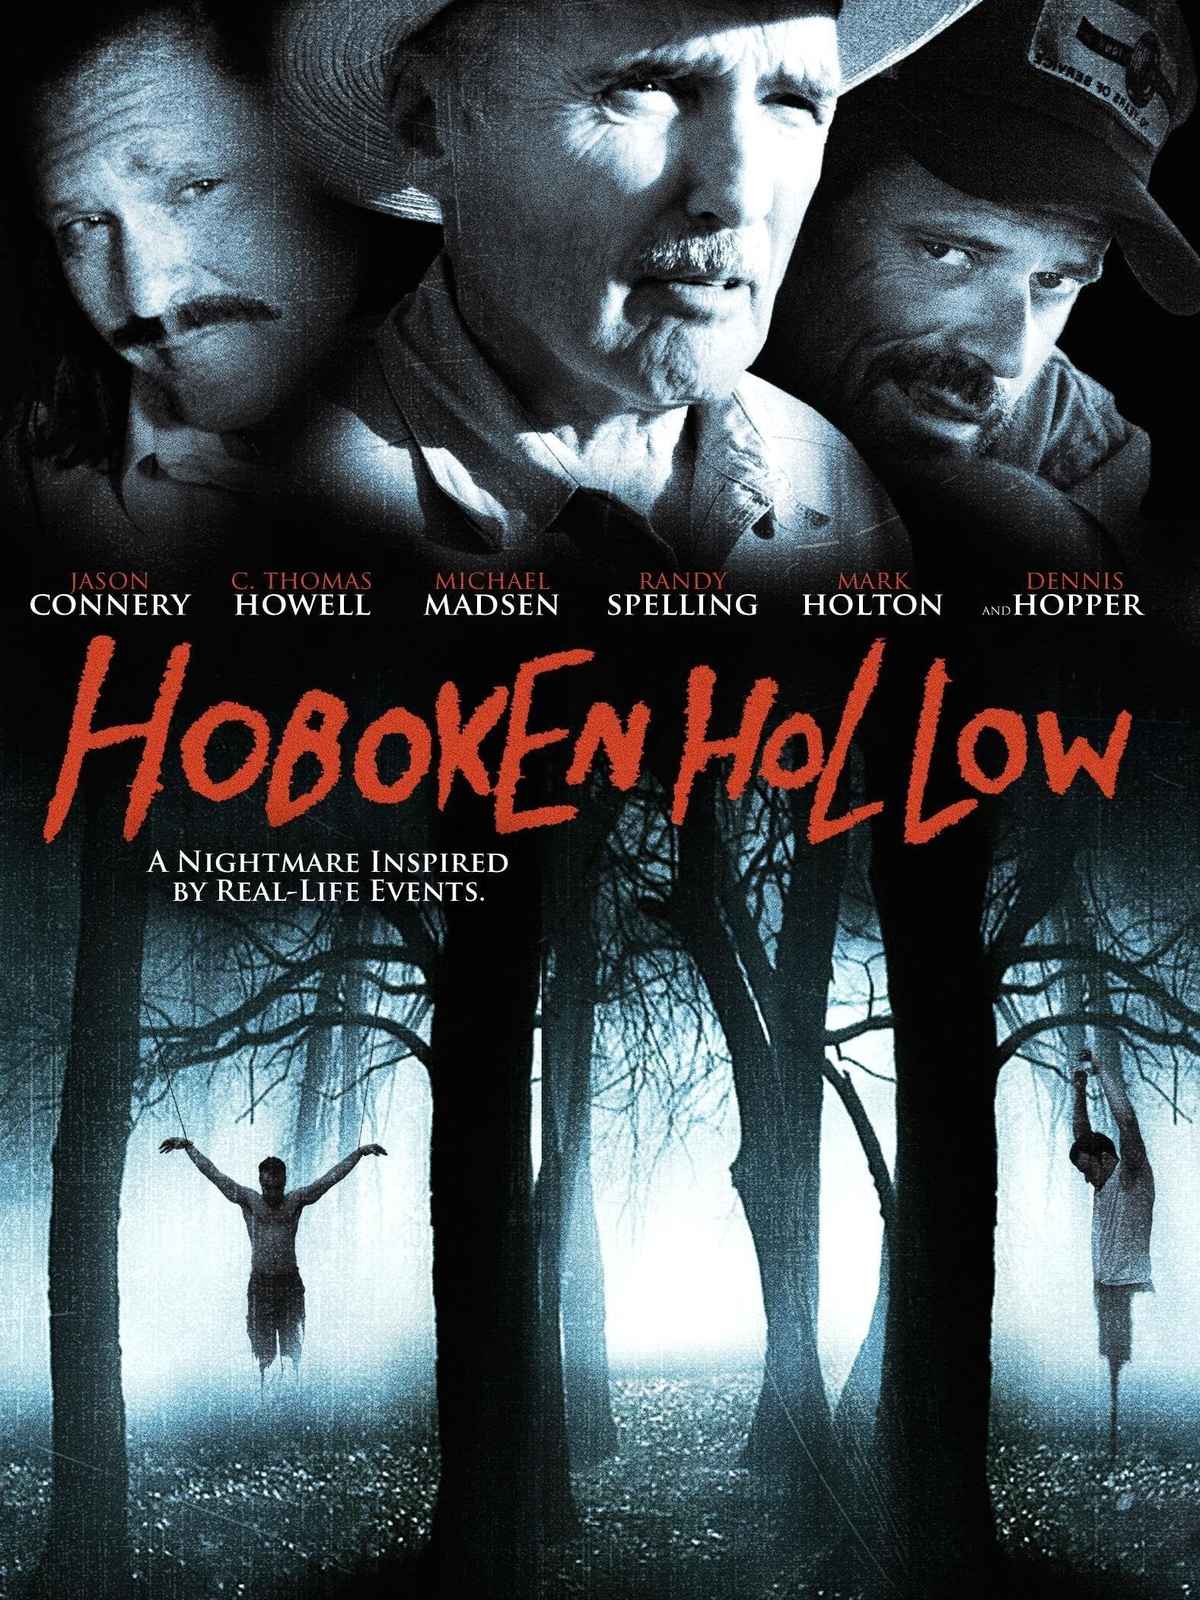 Hoboken Hollow